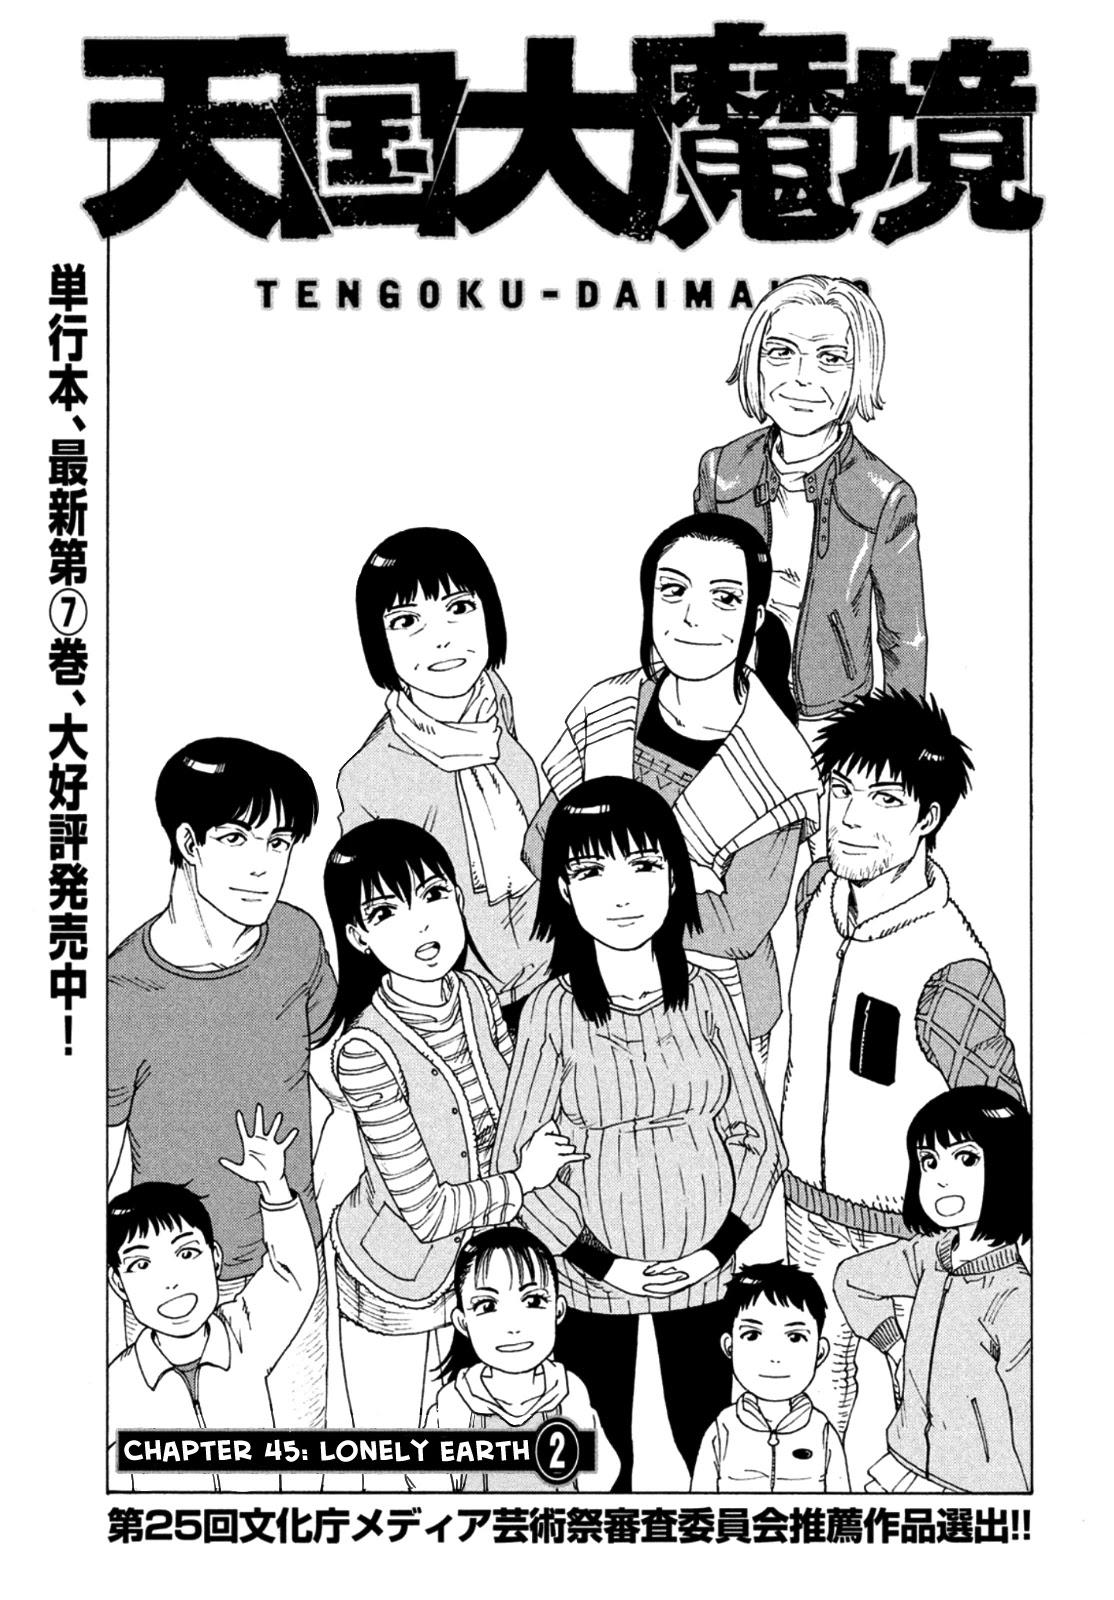 Tengoku Daimakyou Chapter 45: Lonely Earth ➁ page 1 - Mangakakalot